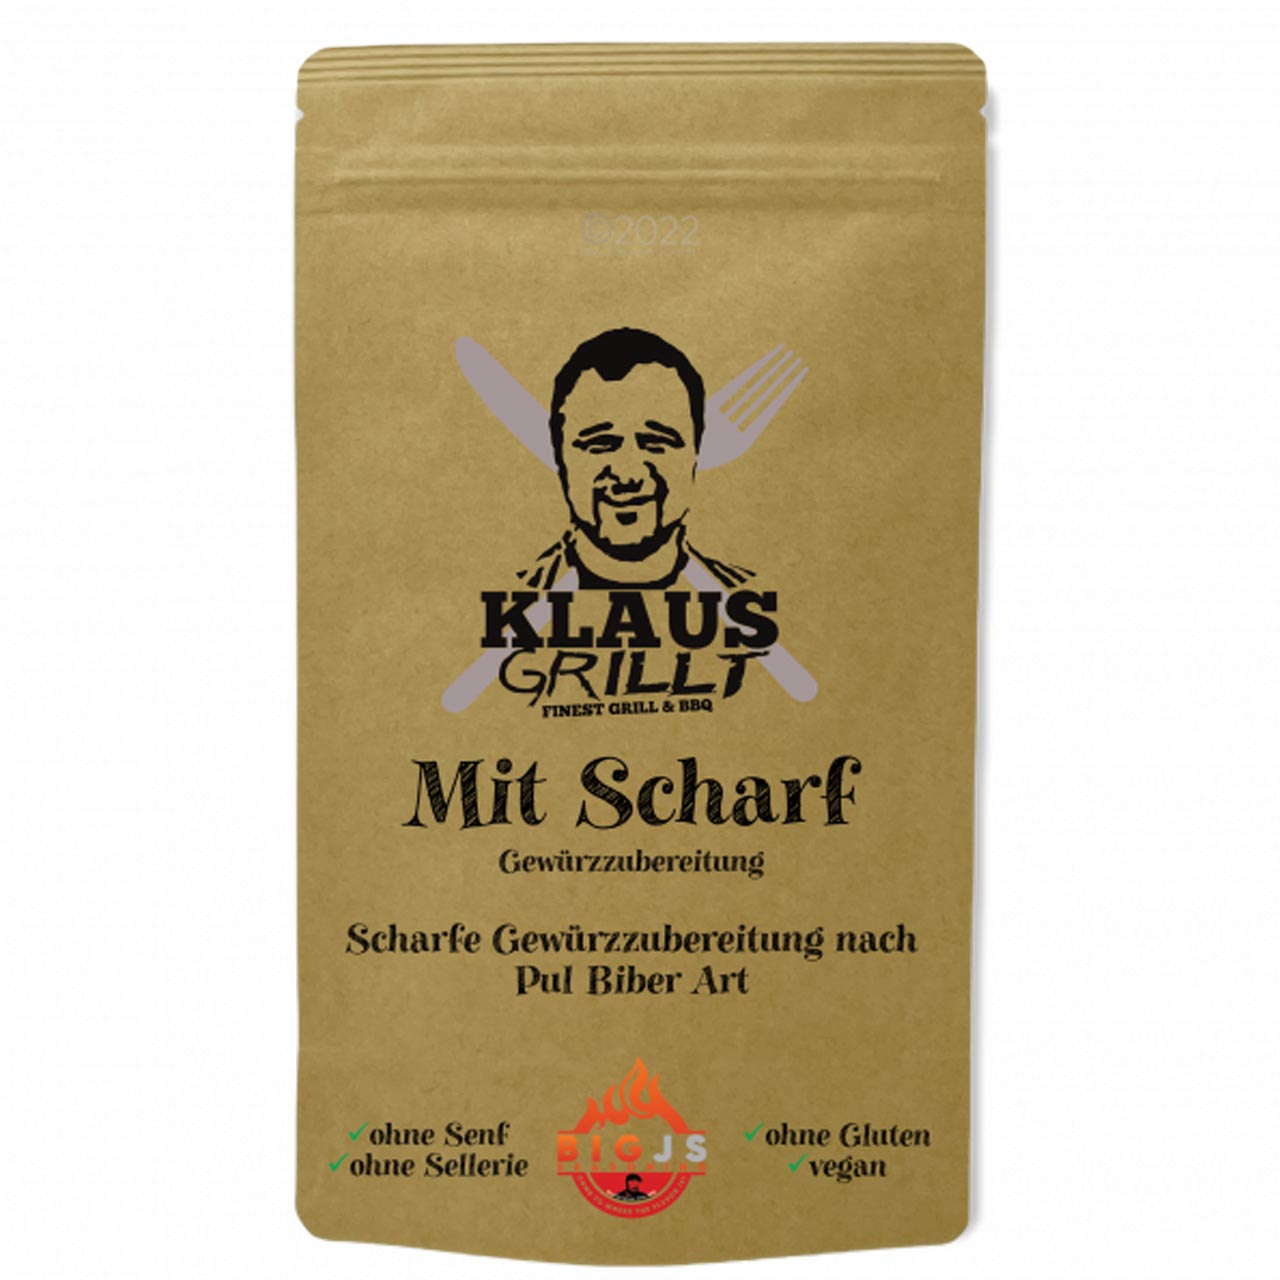 Klaus Grillt - Mit Scharf 100 g Standbeutel